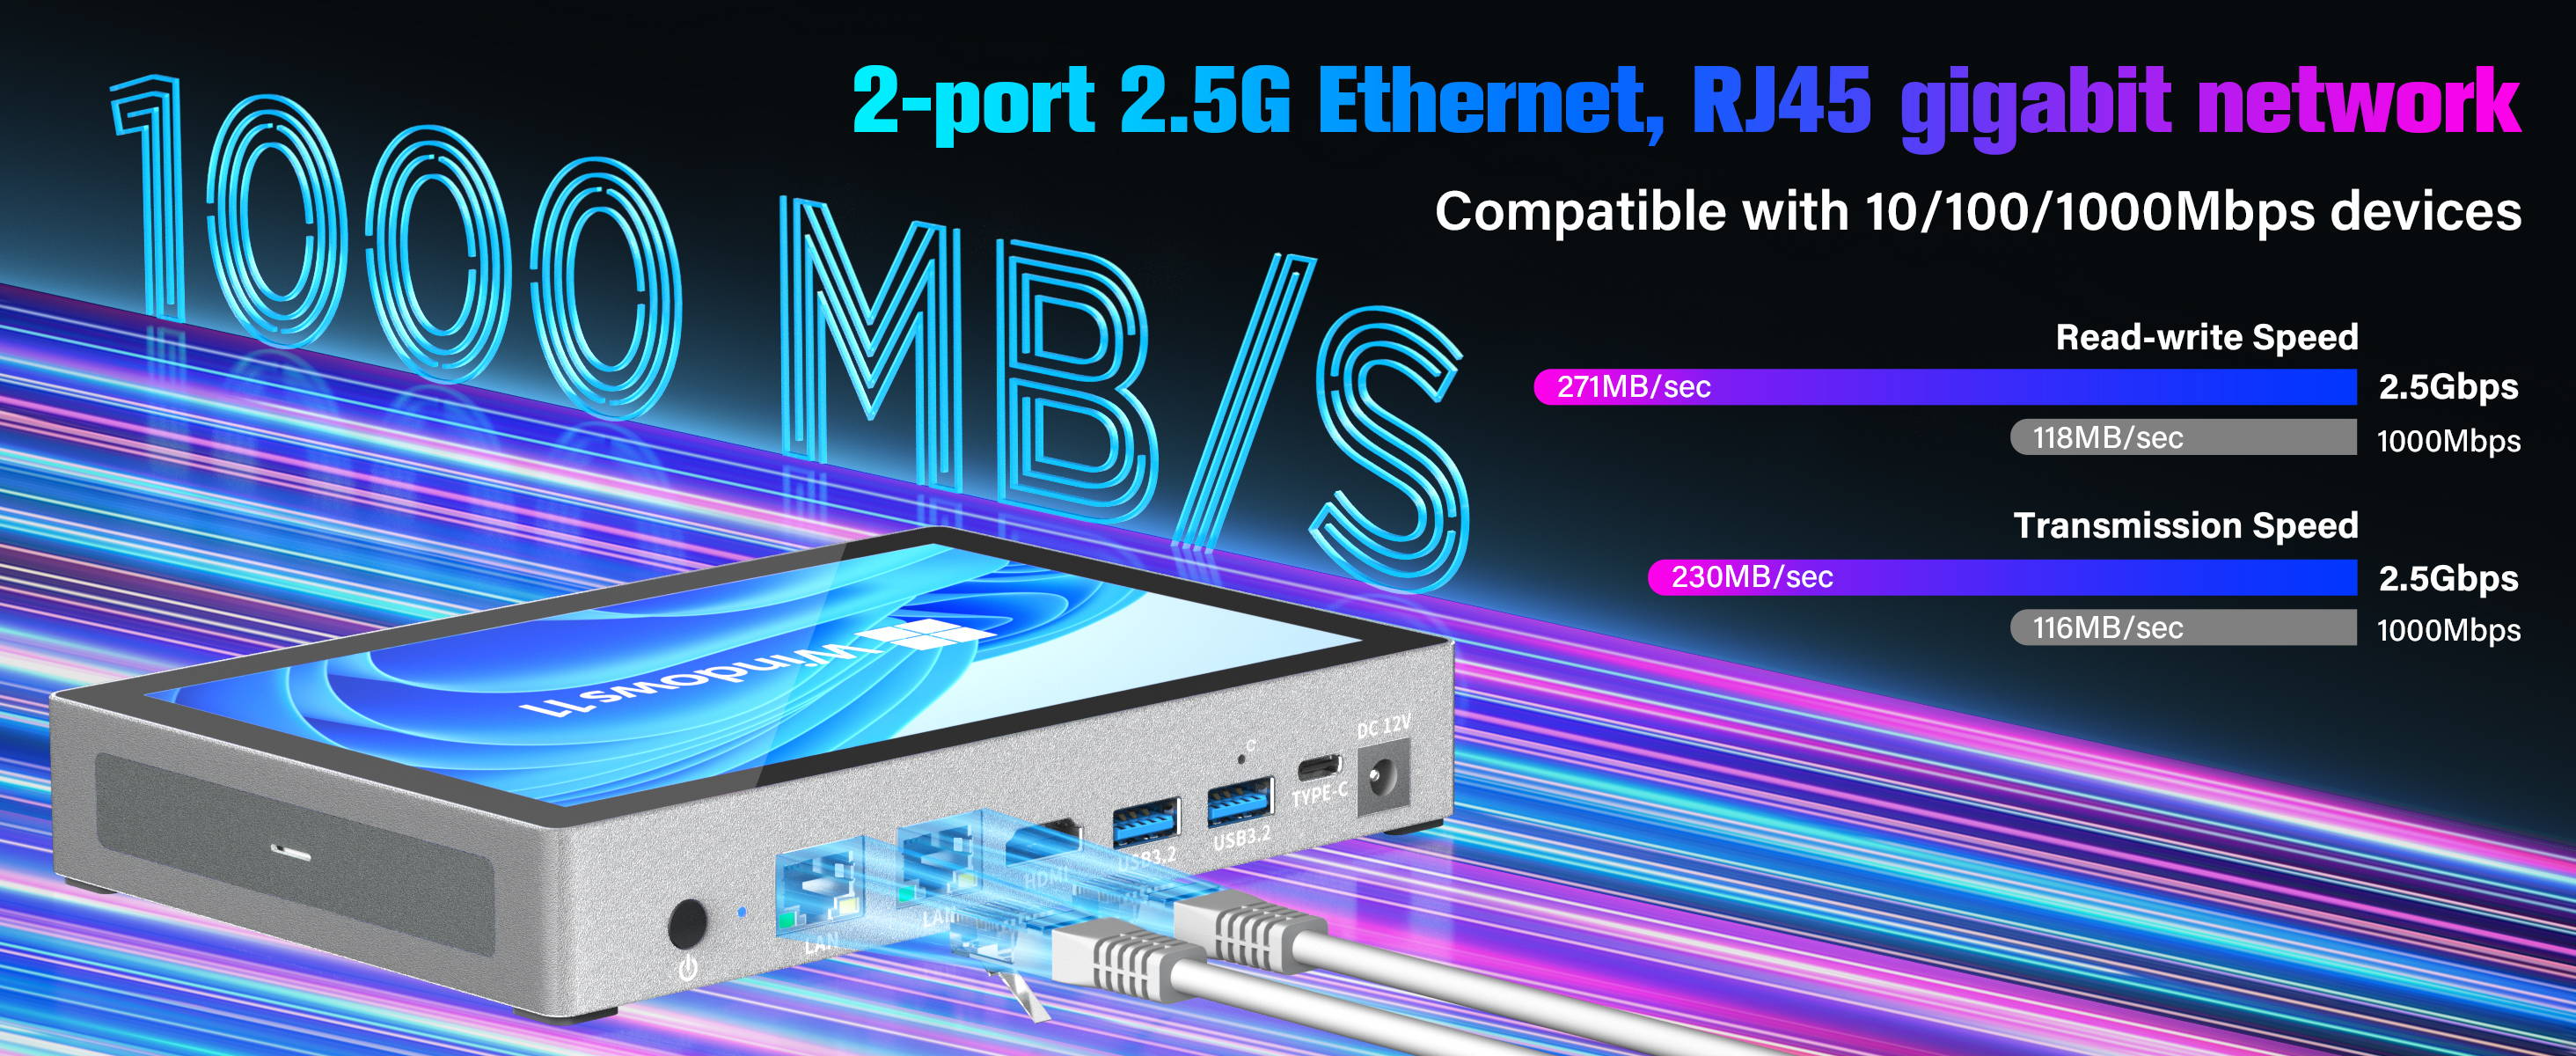 HiGolePC，2-port 2.5G Ethernet, Rj45 gigabit network